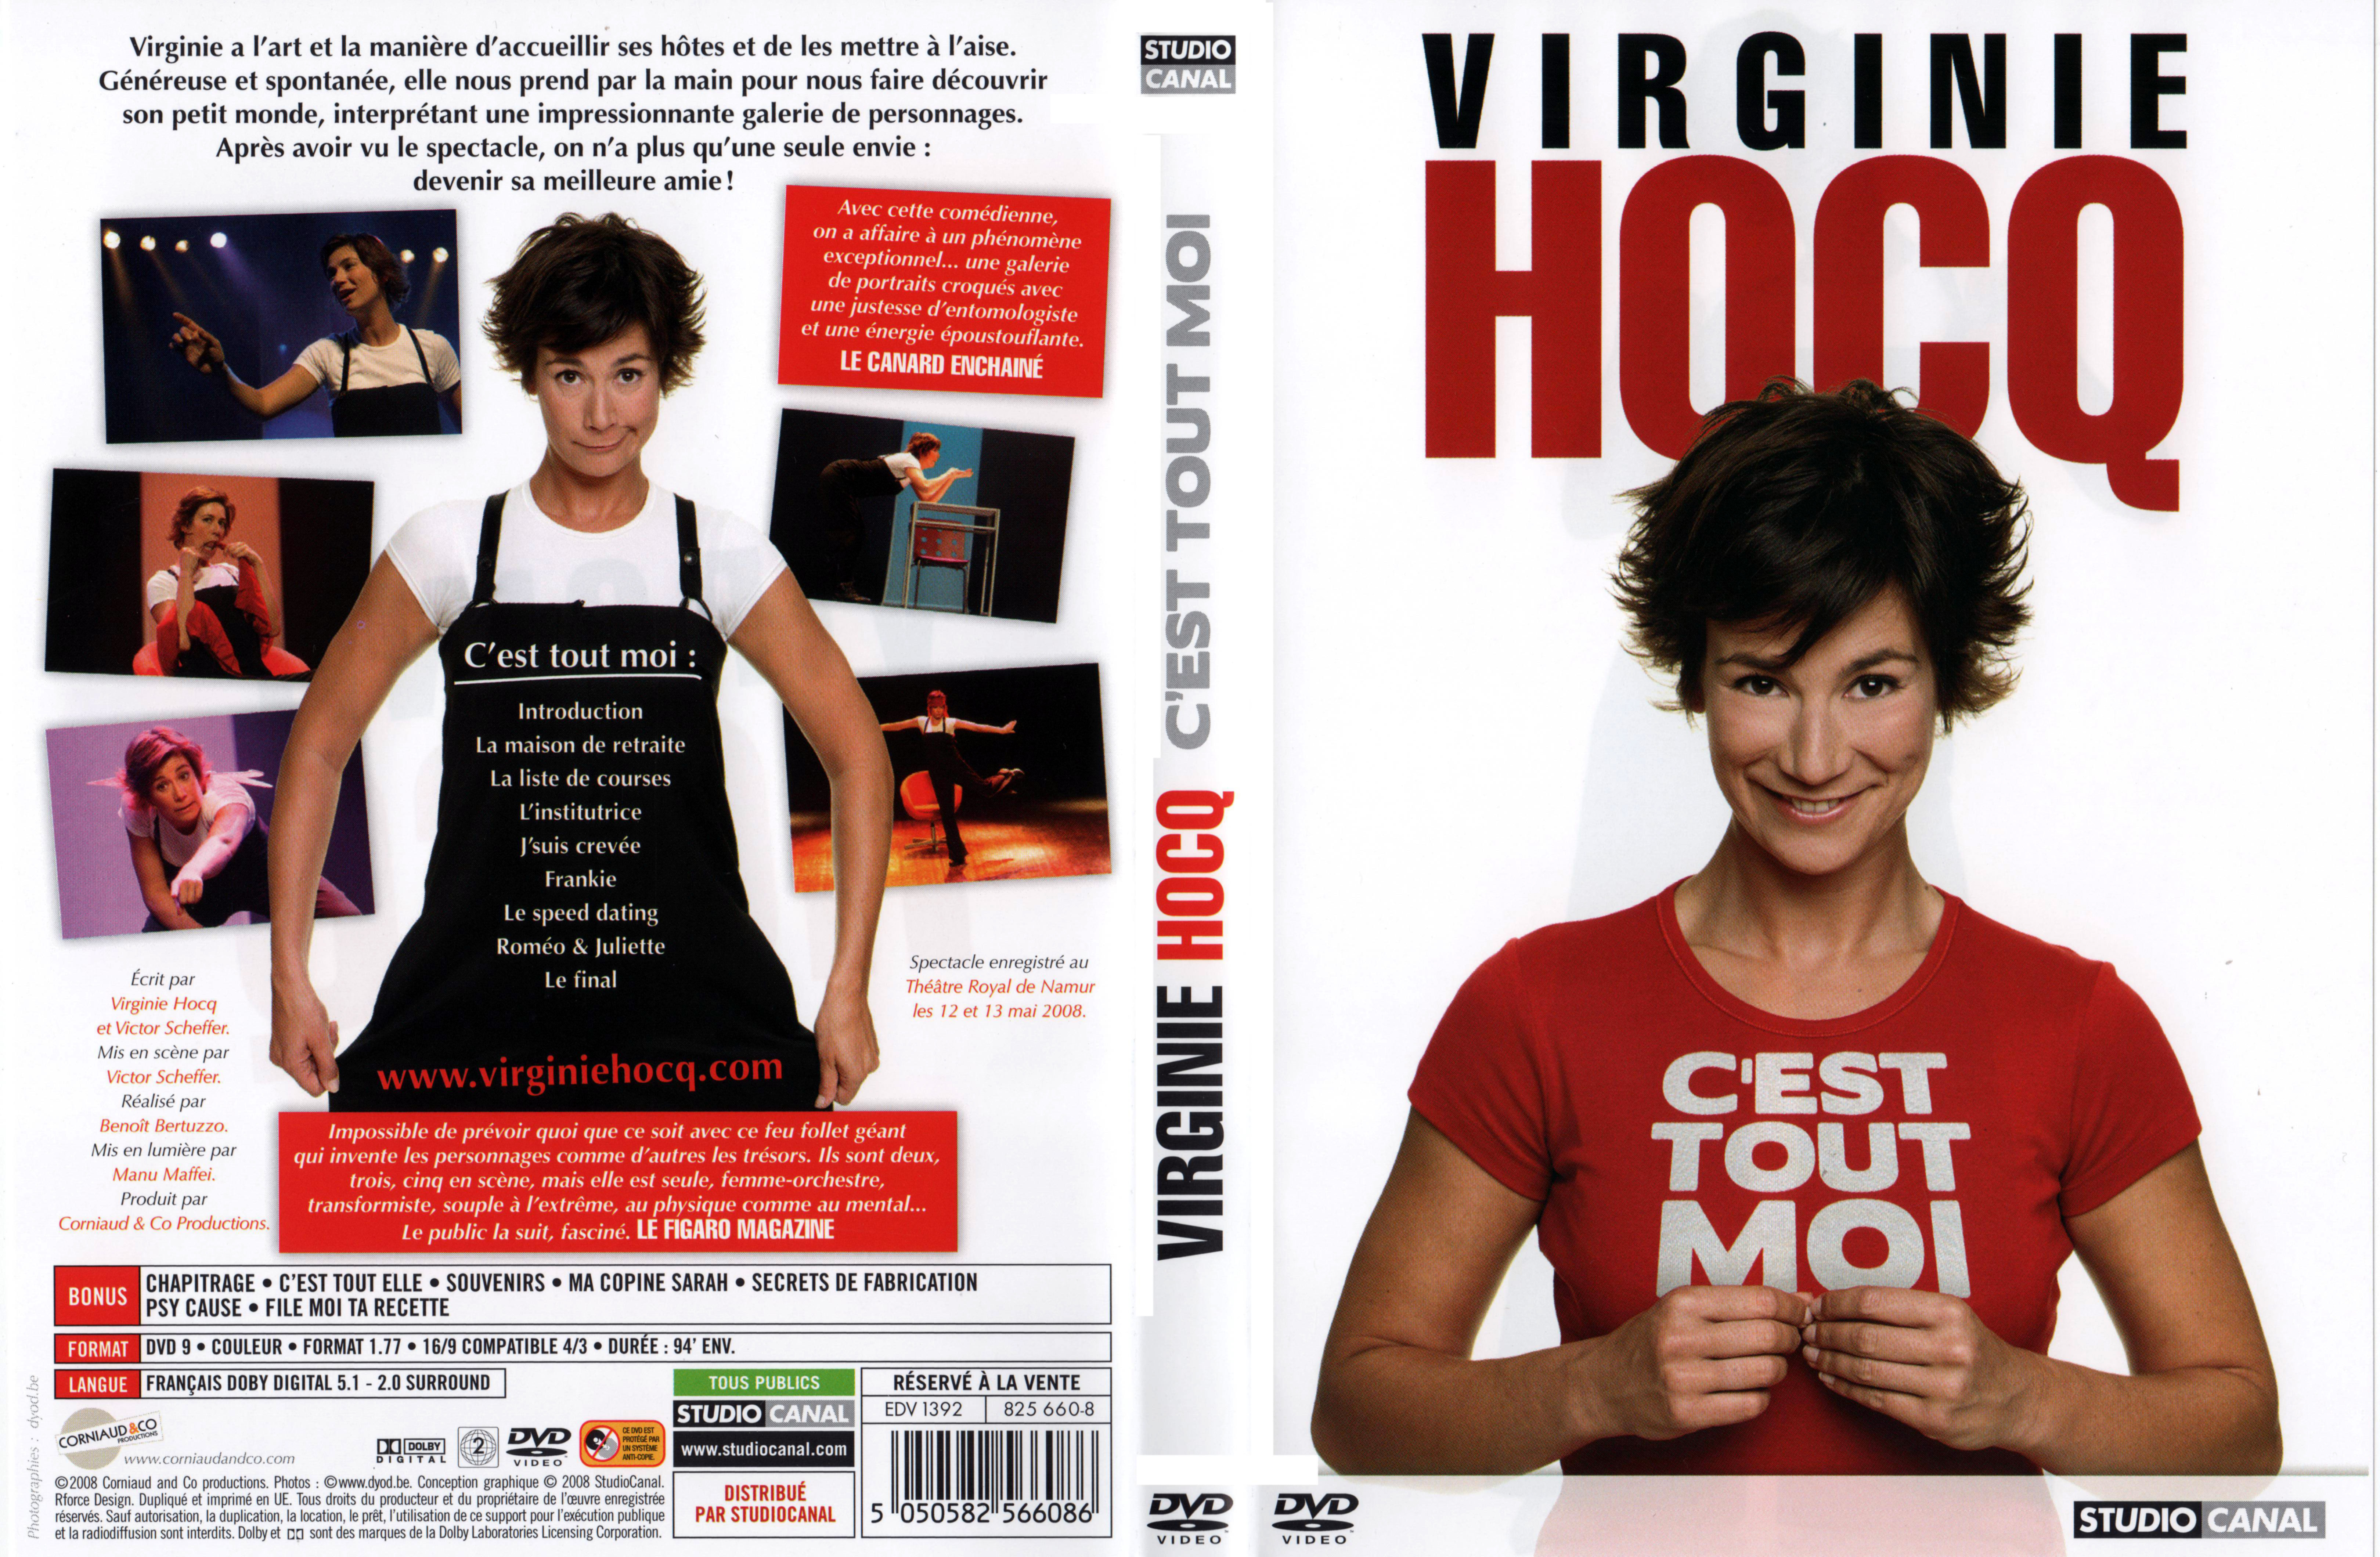 Jaquette DVD Virginie Hocq c